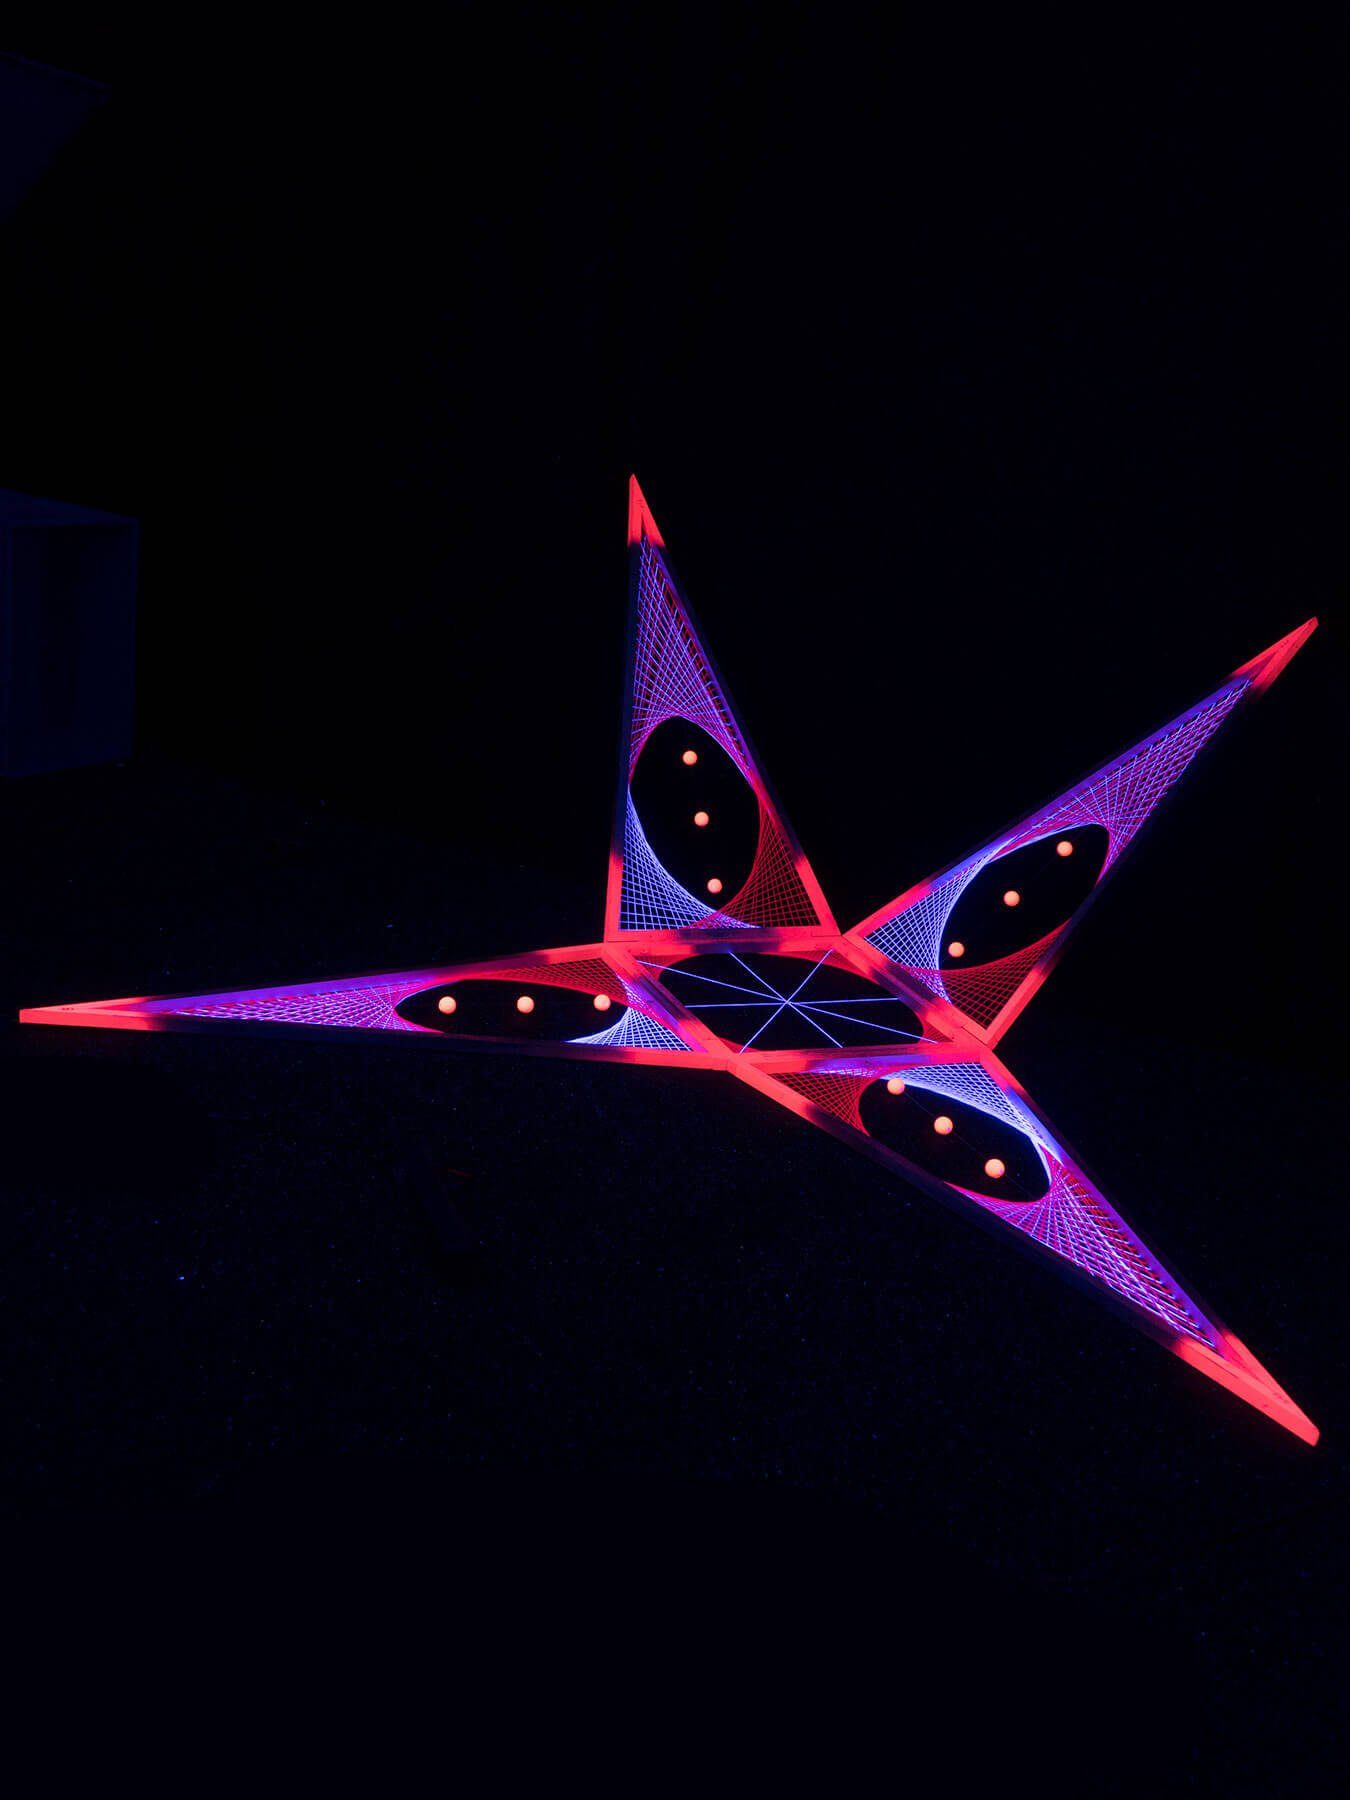 "Convertible unter Stern 3m, leuchtet Pink", Schwarzlicht Schwarzlicht Pyramid 3D StringArt PSYWORK UV-aktiv, Dekoobjekt